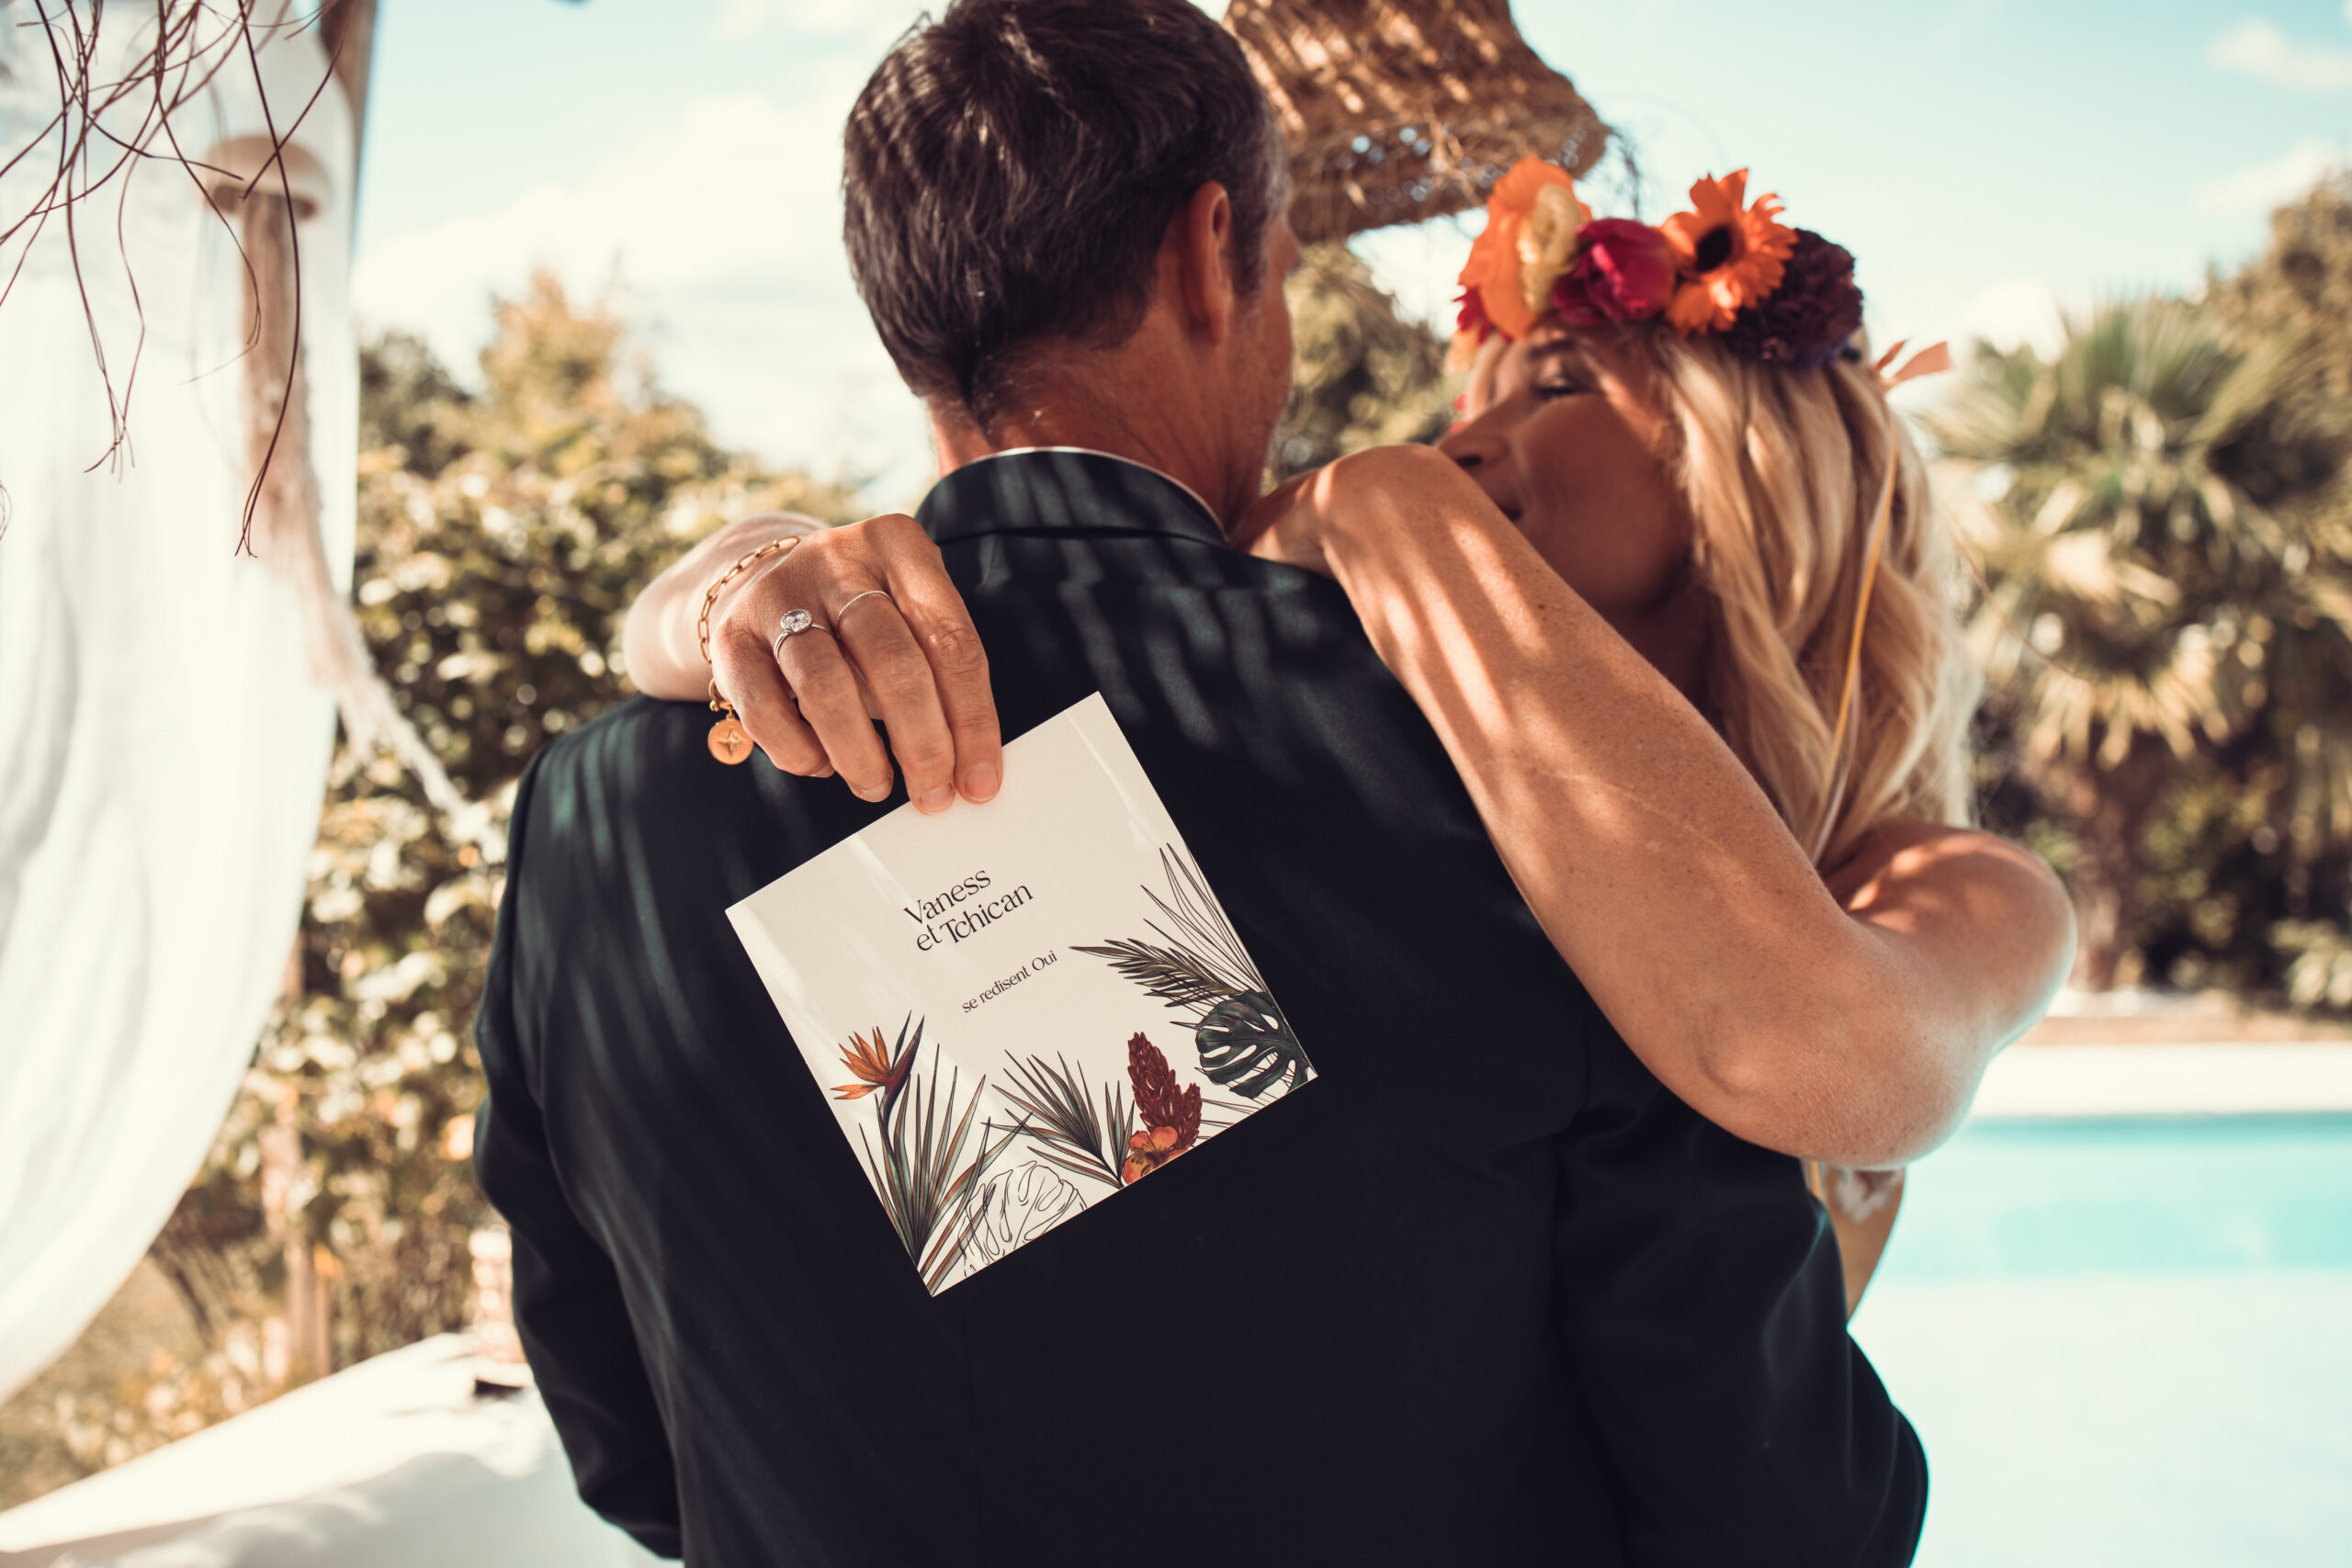 Organisation de votre mariage et renouvellements de voeux à Lyon Rhône-Alpes avec une Wedding planner